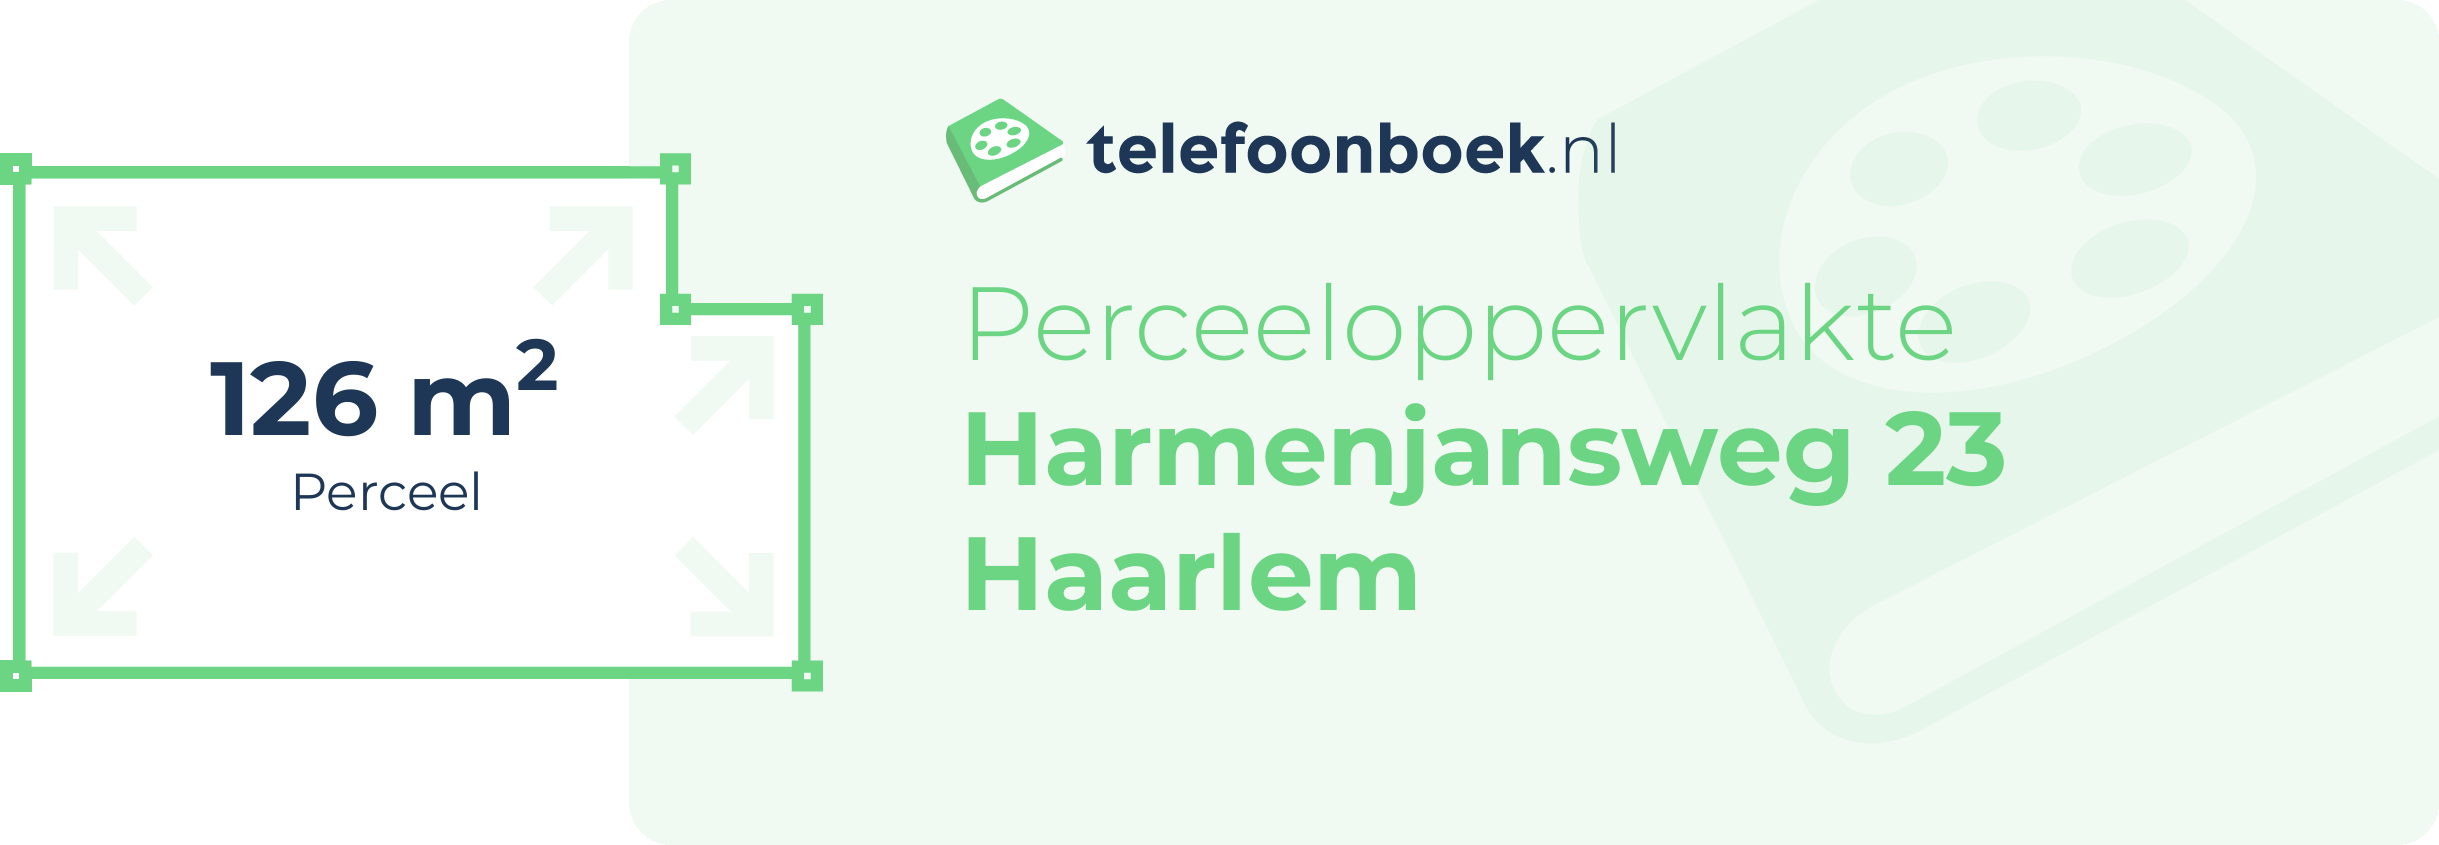 Perceeloppervlakte Harmenjansweg 23 Haarlem